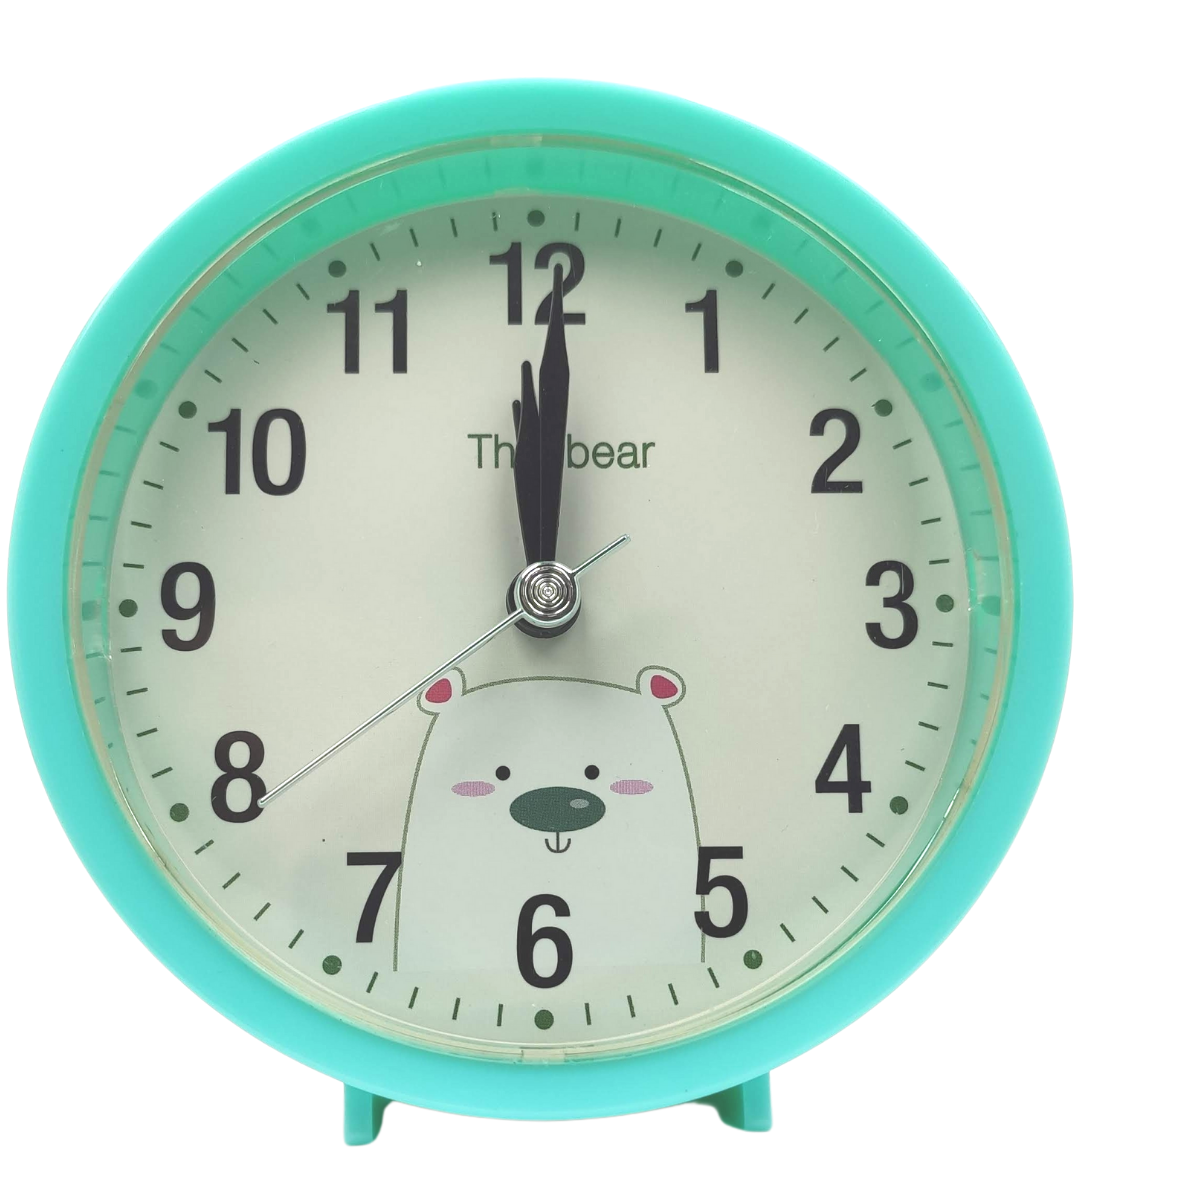 Relógio Despertador Analogico Estilo Antigo Pequeno Alarme Retrô Redondo Verde